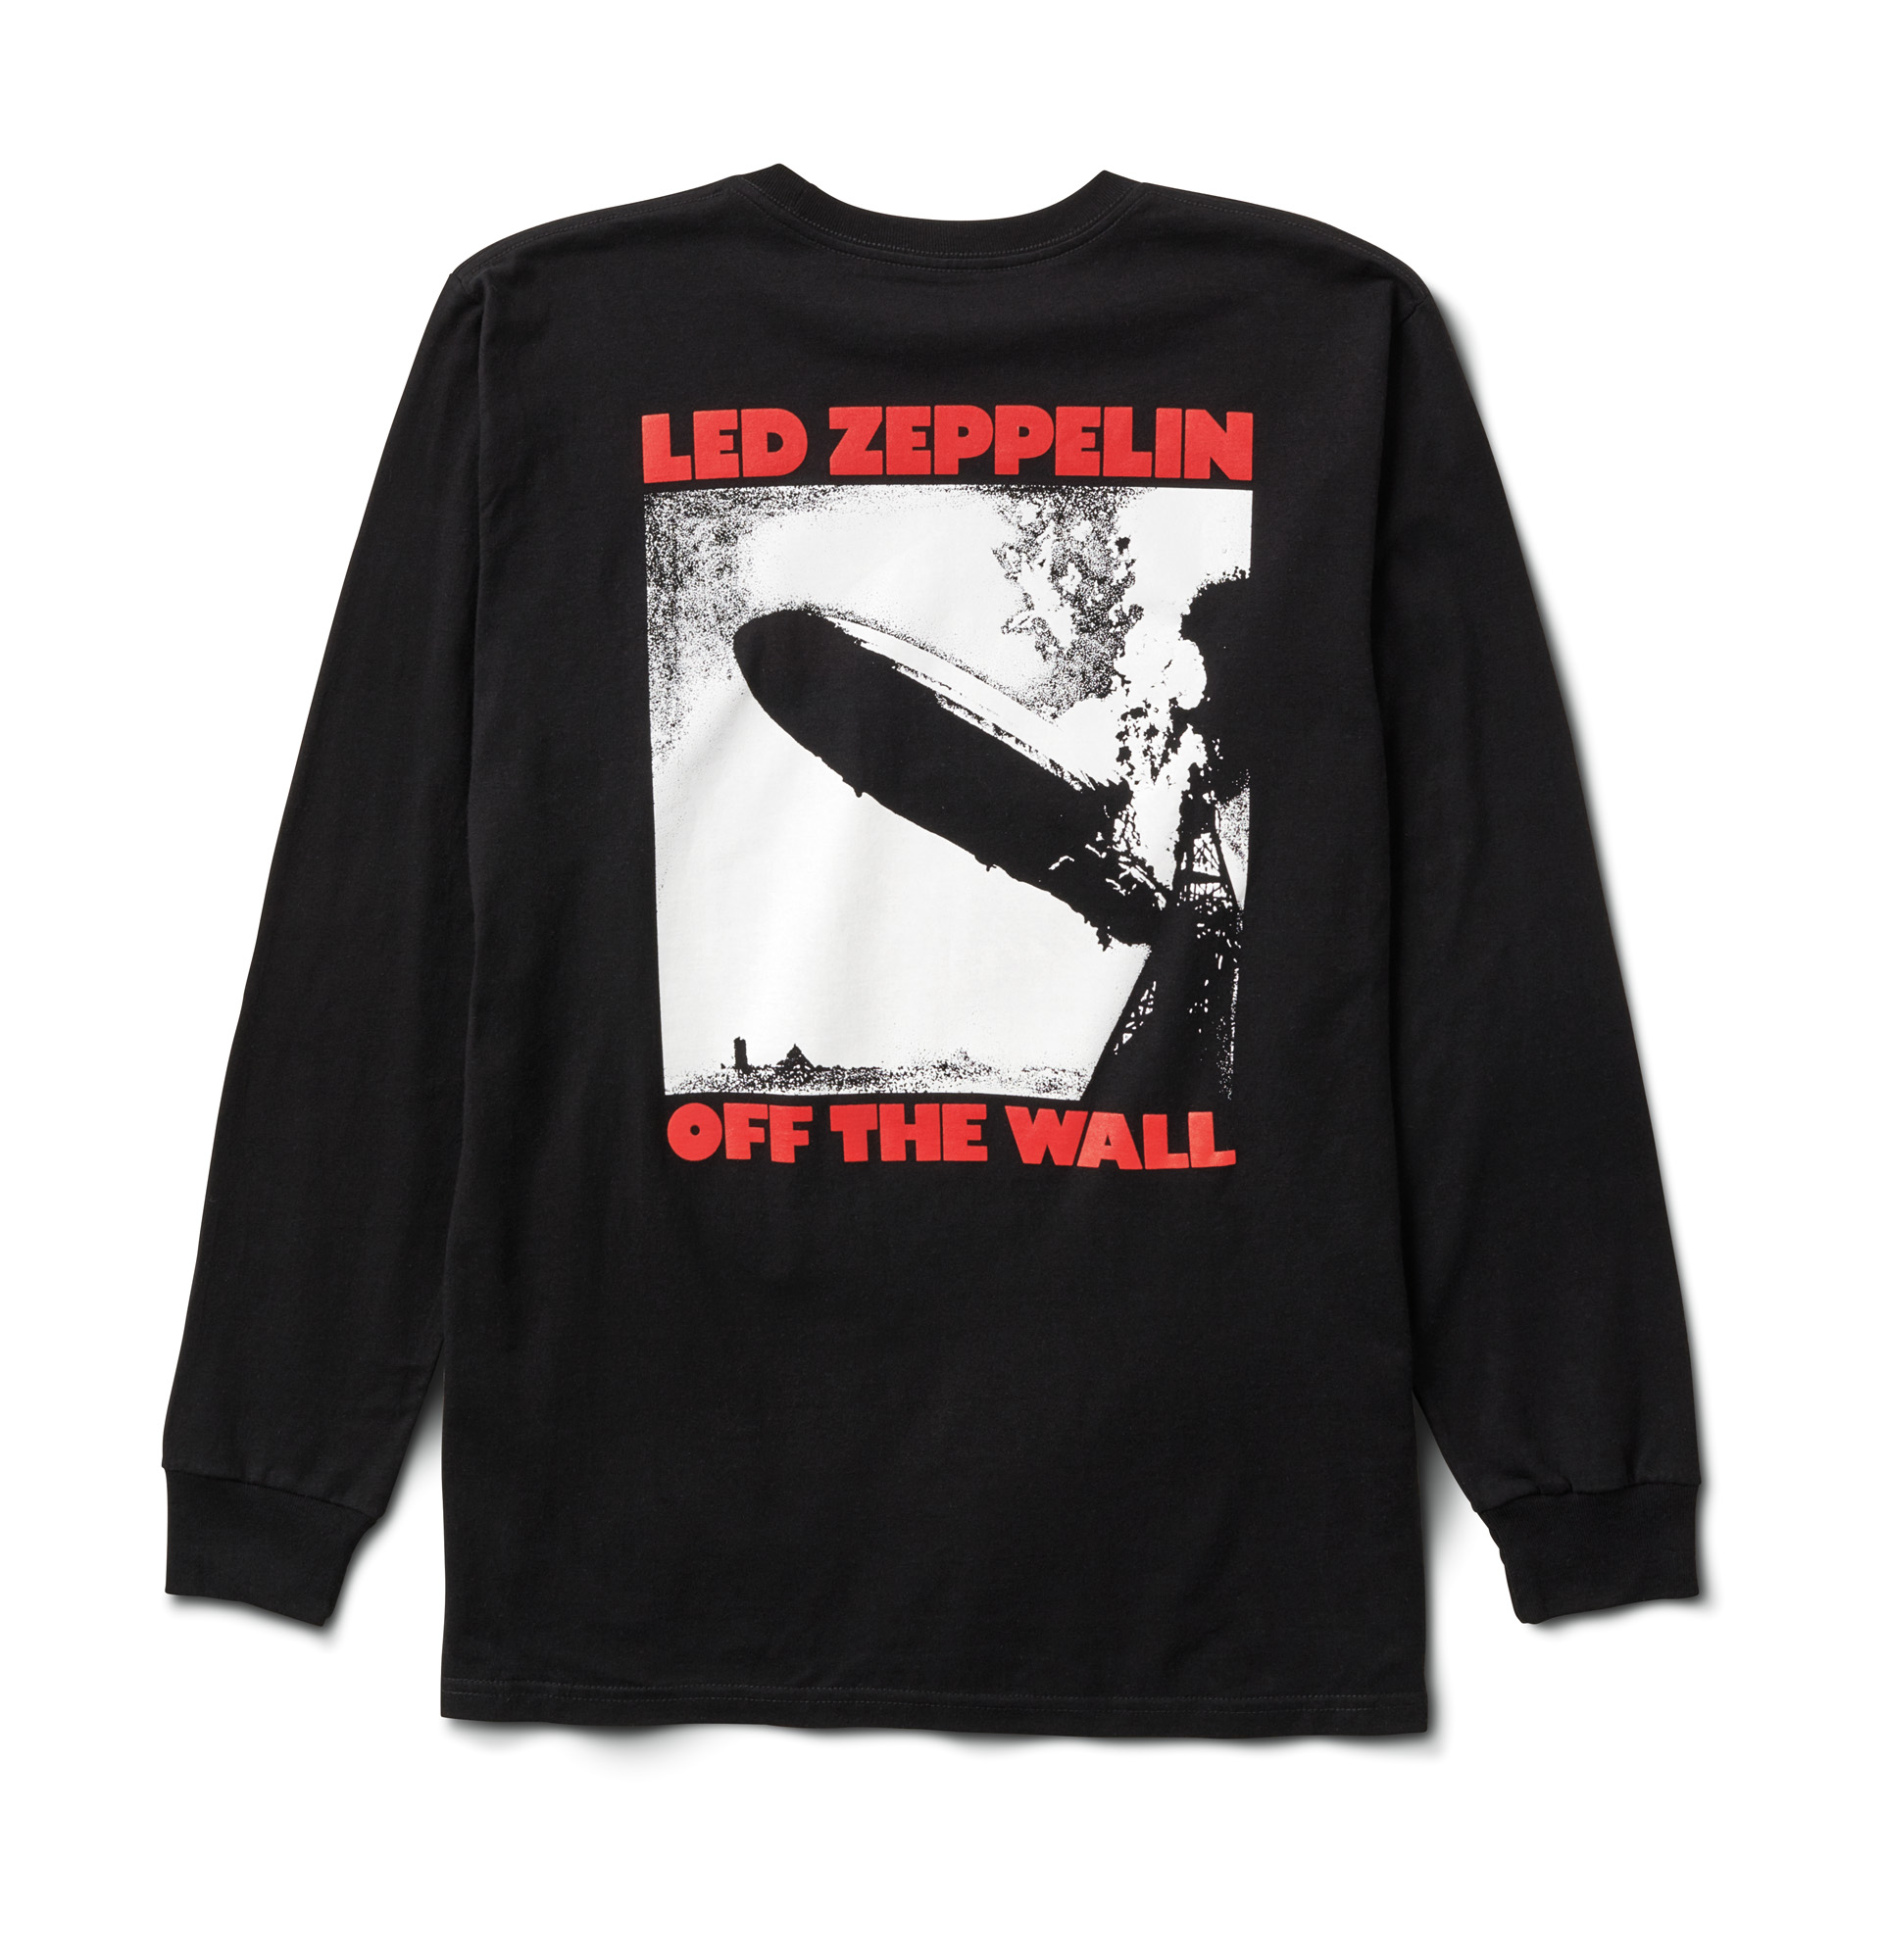 Vans conmemora el 50 aniversario del lanzamiento del album debut de Led Zeppelin